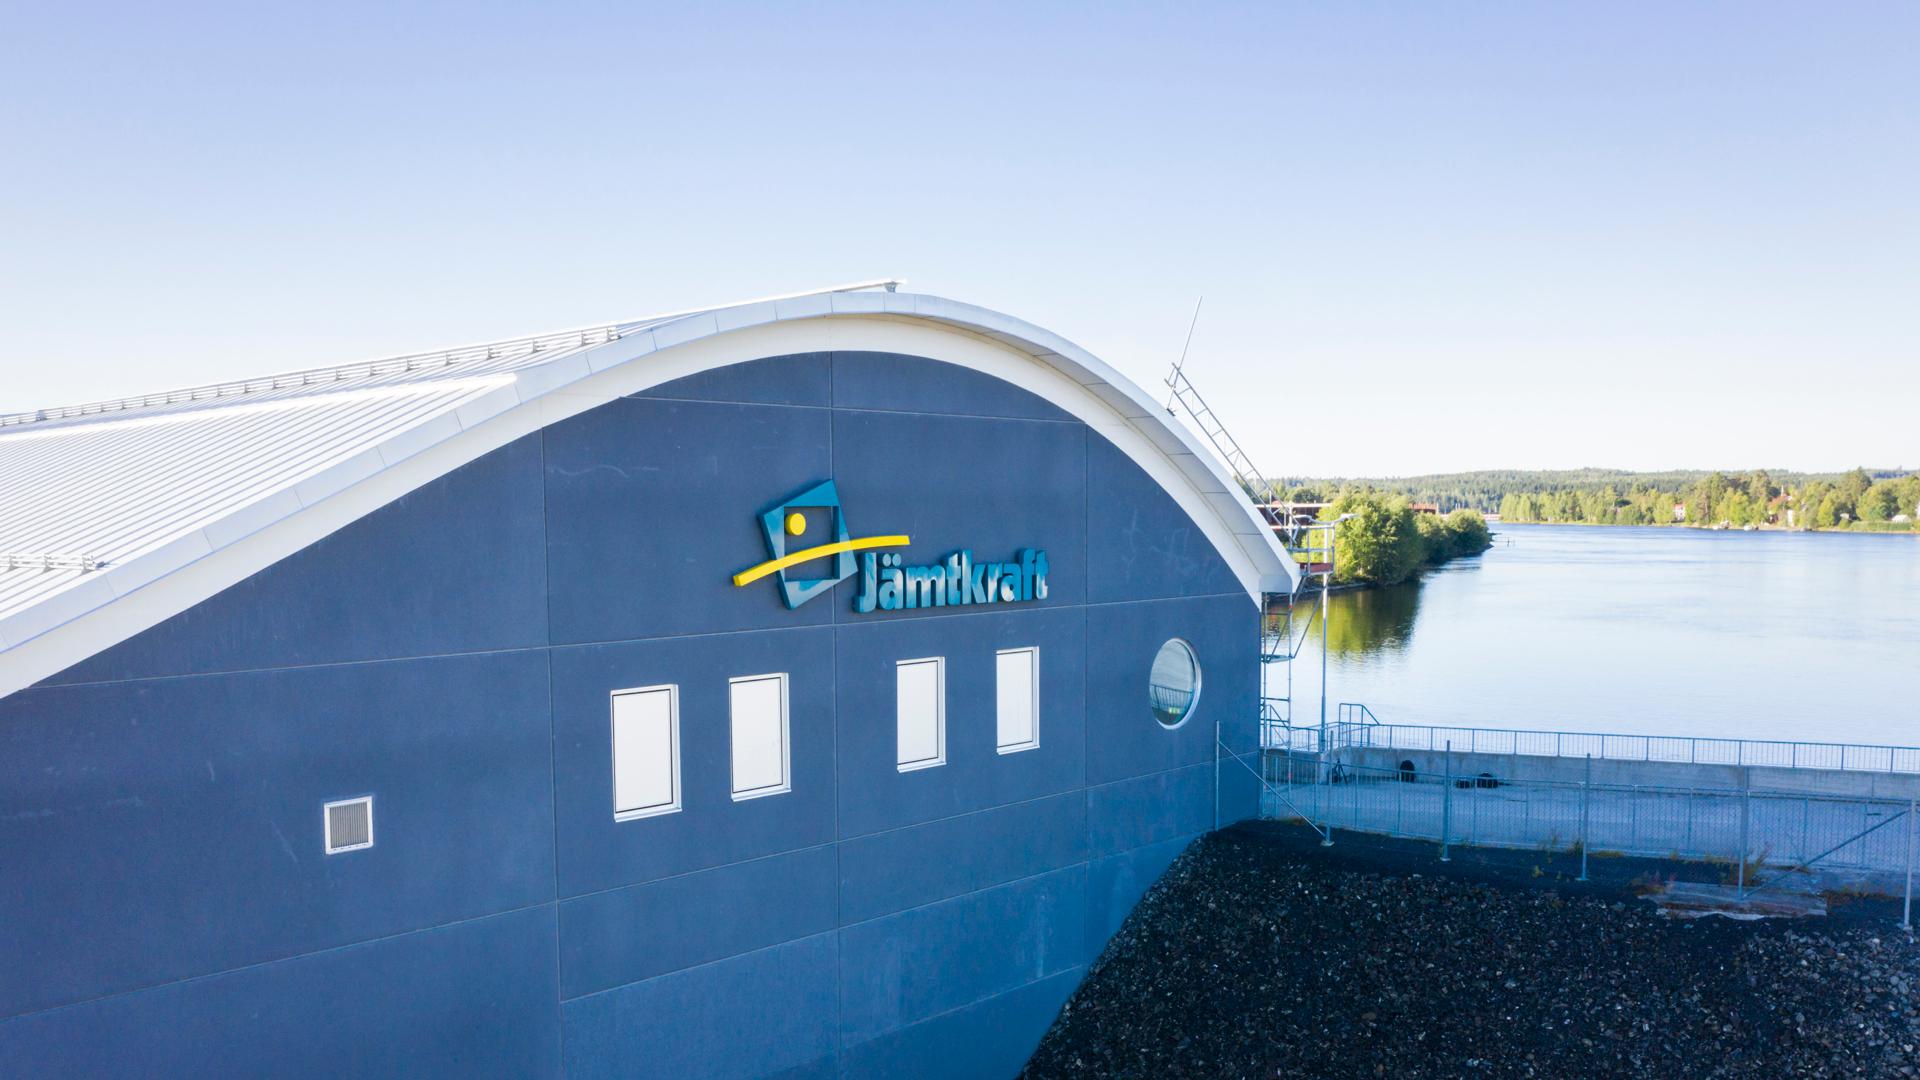 Sidan av vattenkraftverket i Hissmofors. På väggen sitter Jämtkrafts logotyp och i bakgrunden syns vatten vid kraftverket.